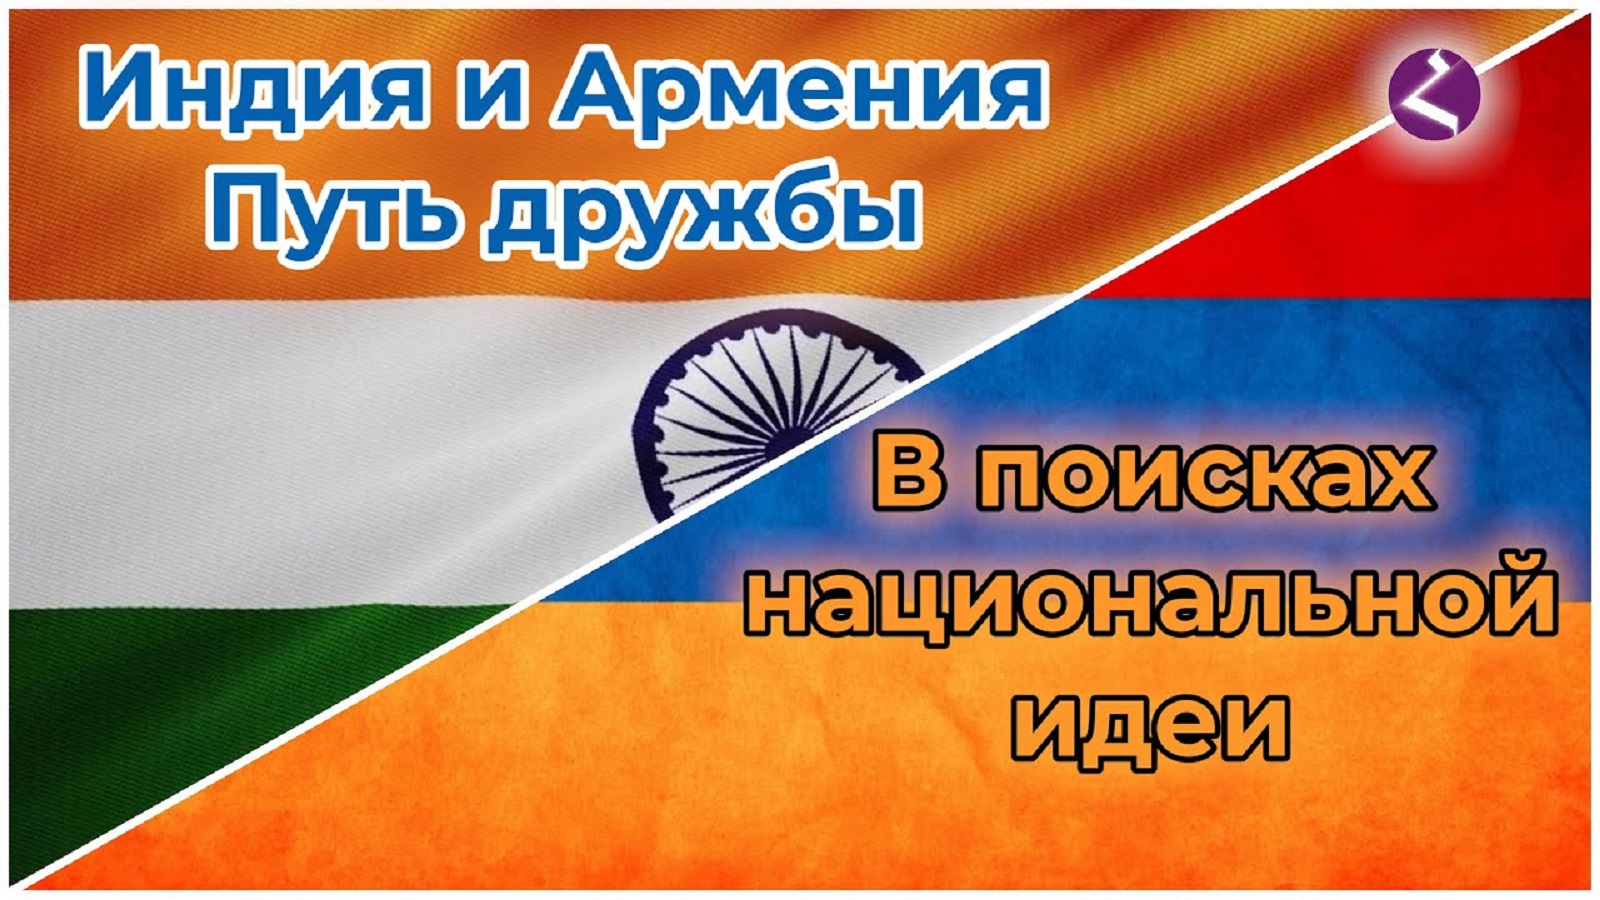 Индия-Армения. Путь дружбы./Факты от HAYK media/